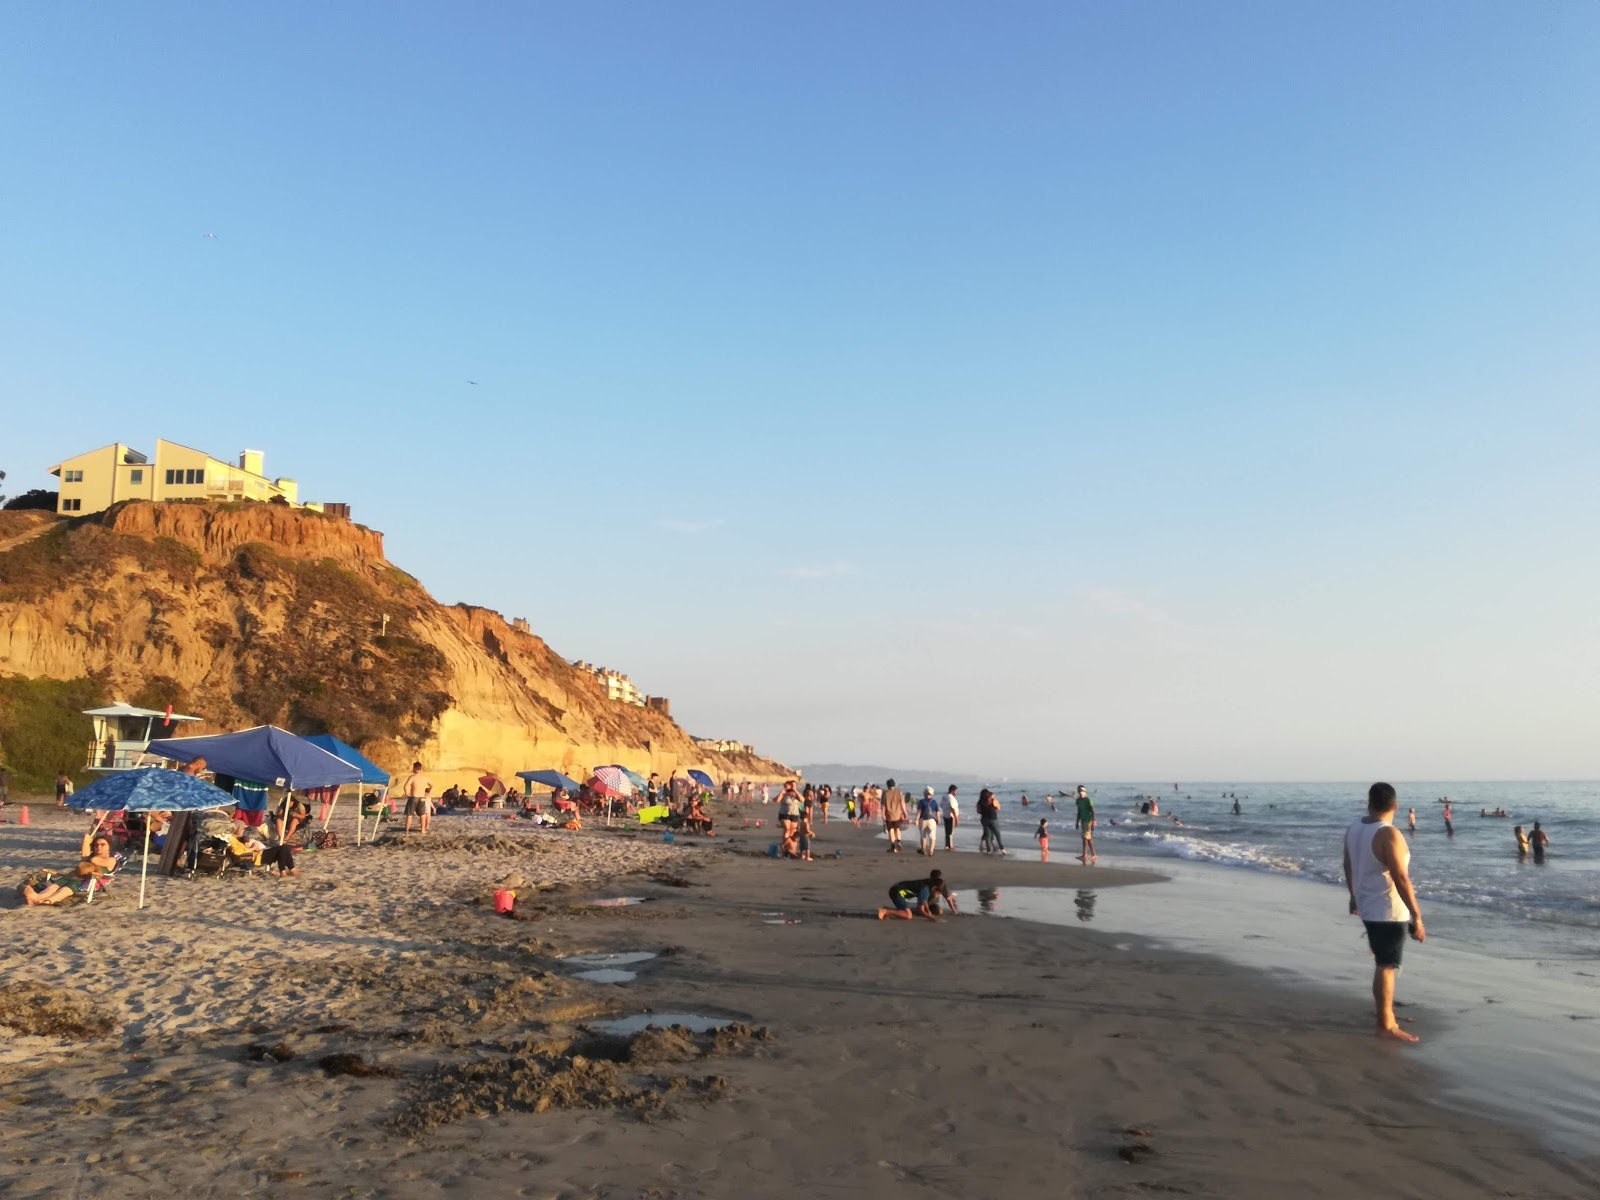 Fotografie cu Solana beach - locul popular printre cunoscătorii de relaxare